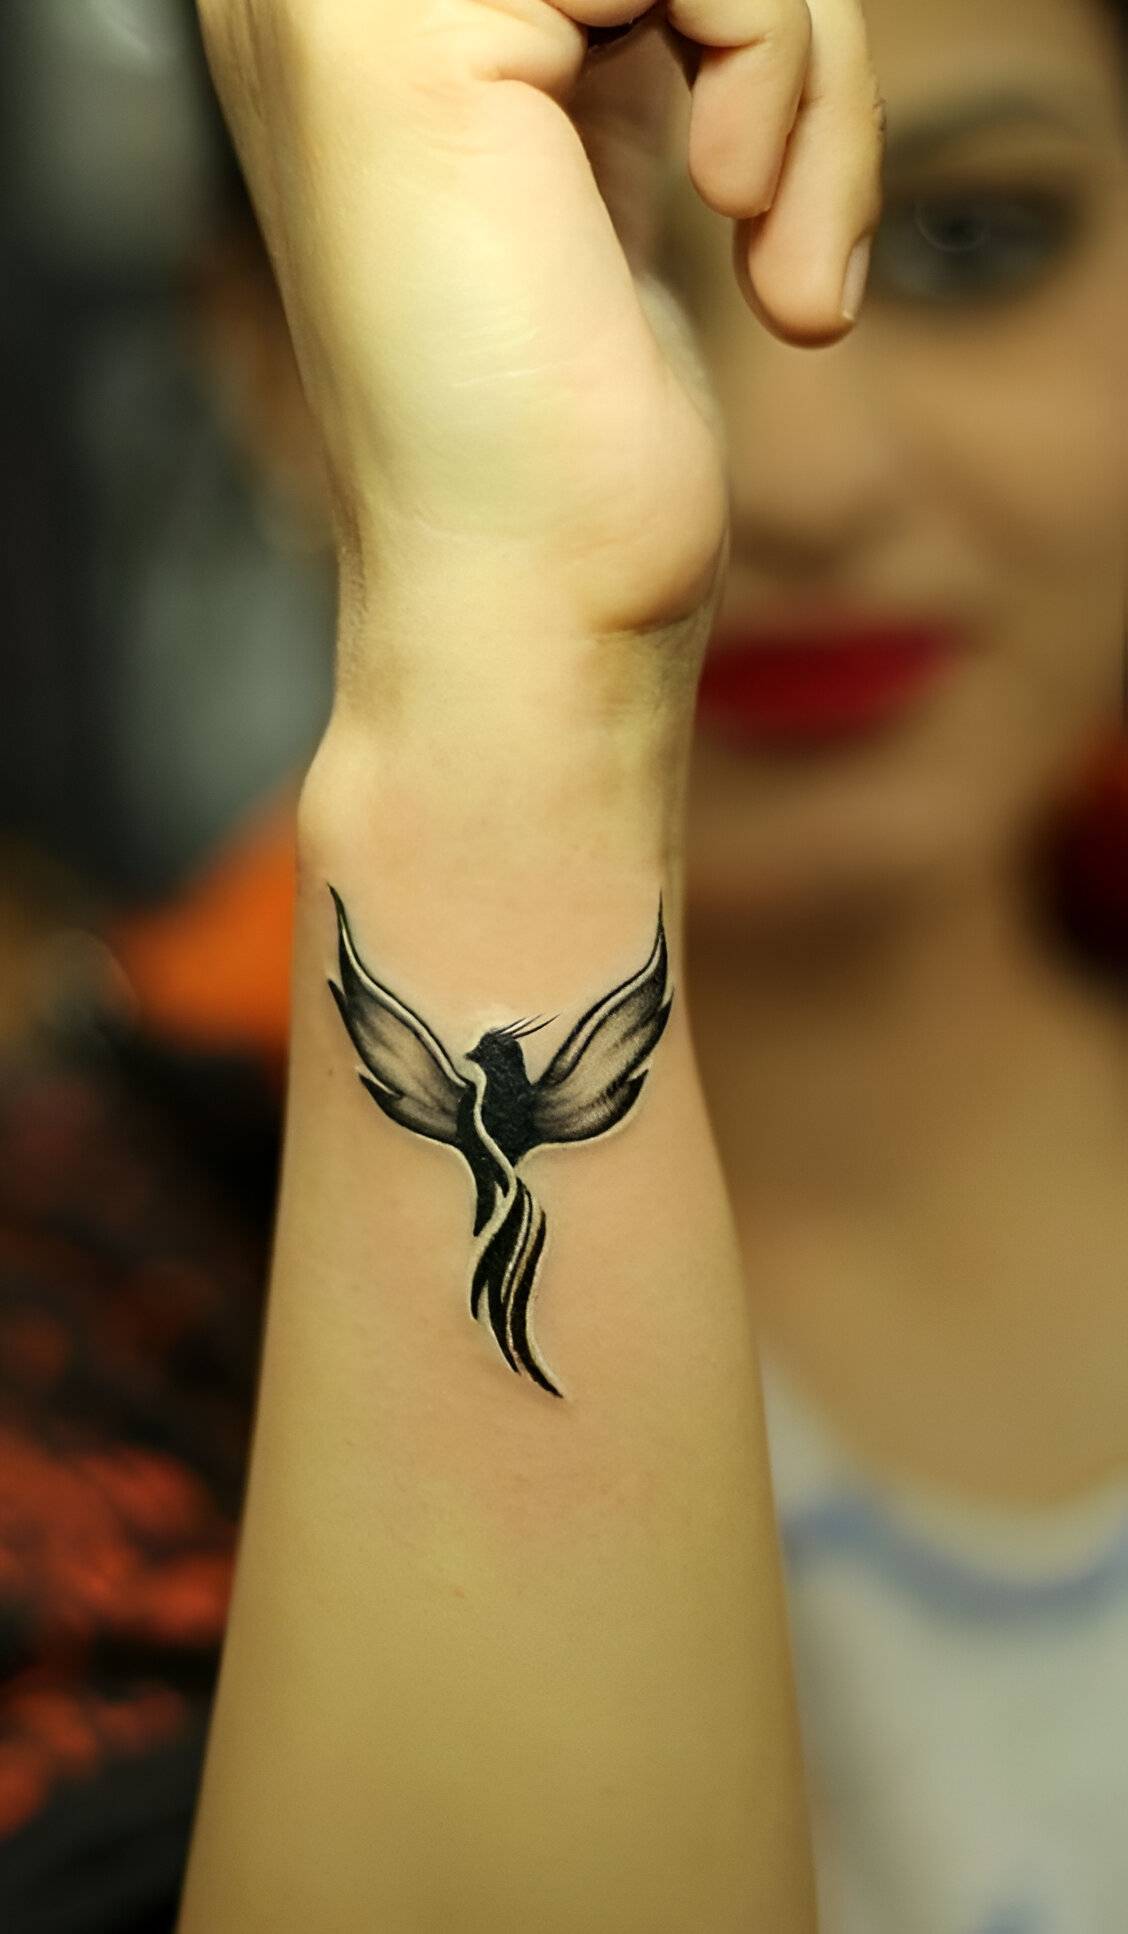 Wrist Phoenix Tattoos